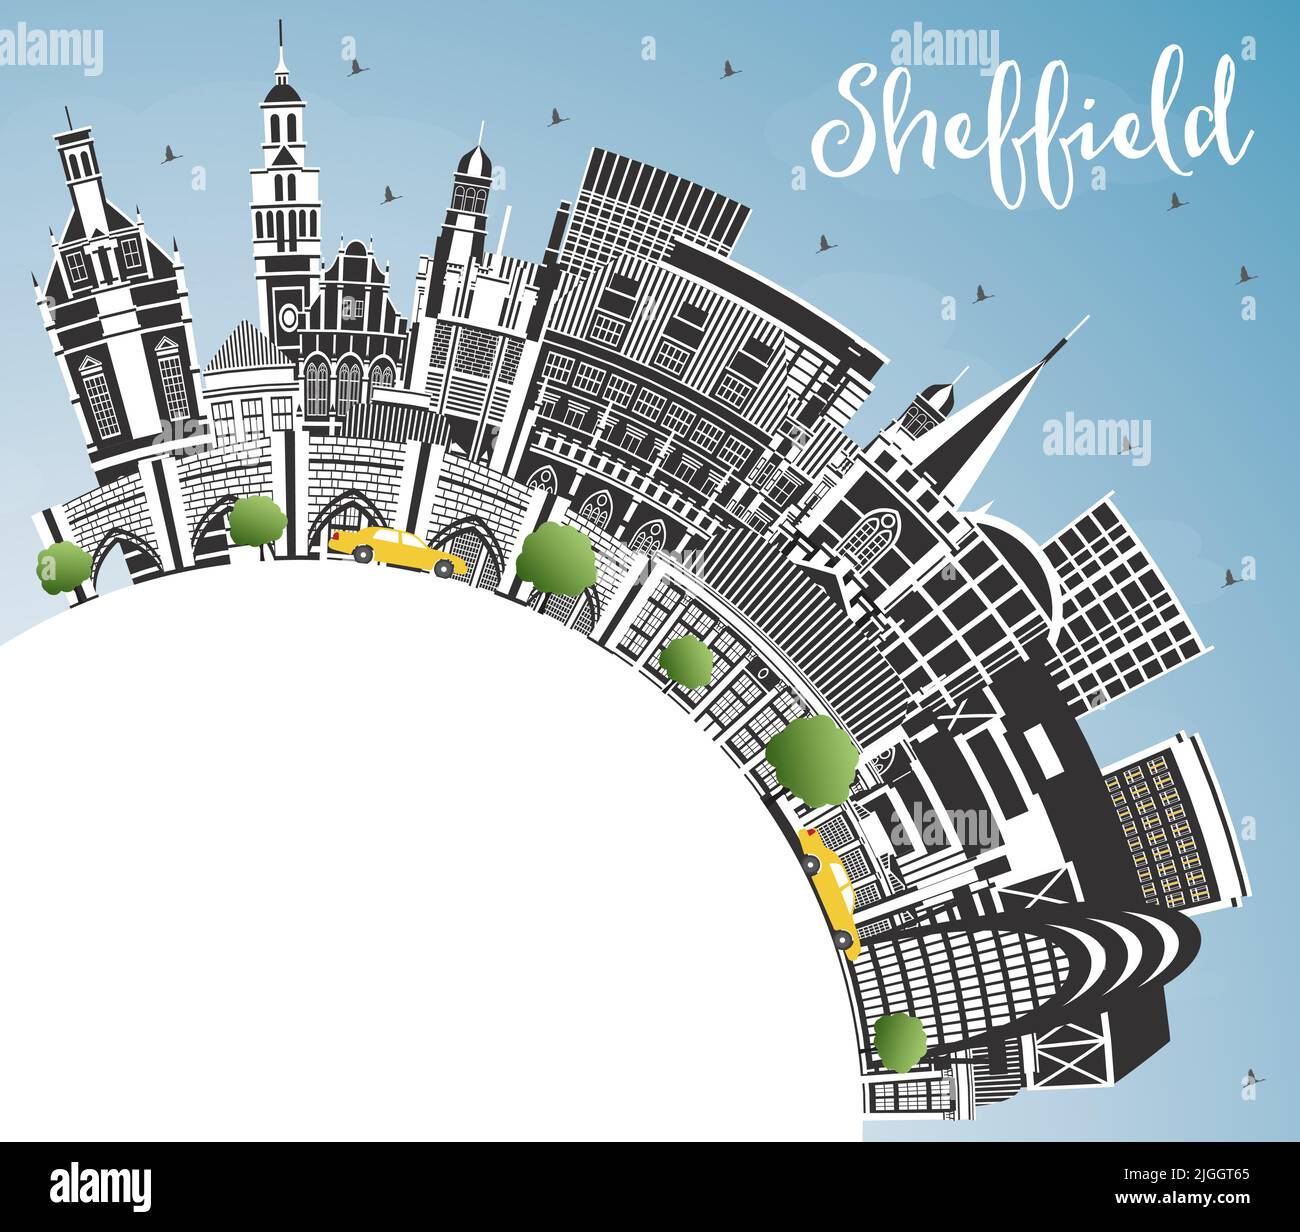 Sheffield UK City Skyline avec bâtiments couleur, ciel bleu et espace de copie. Illustration vectorielle. Ville de Sheffield dans le Yorkshire du Sud avec sites touristiques. Illustration de Vecteur